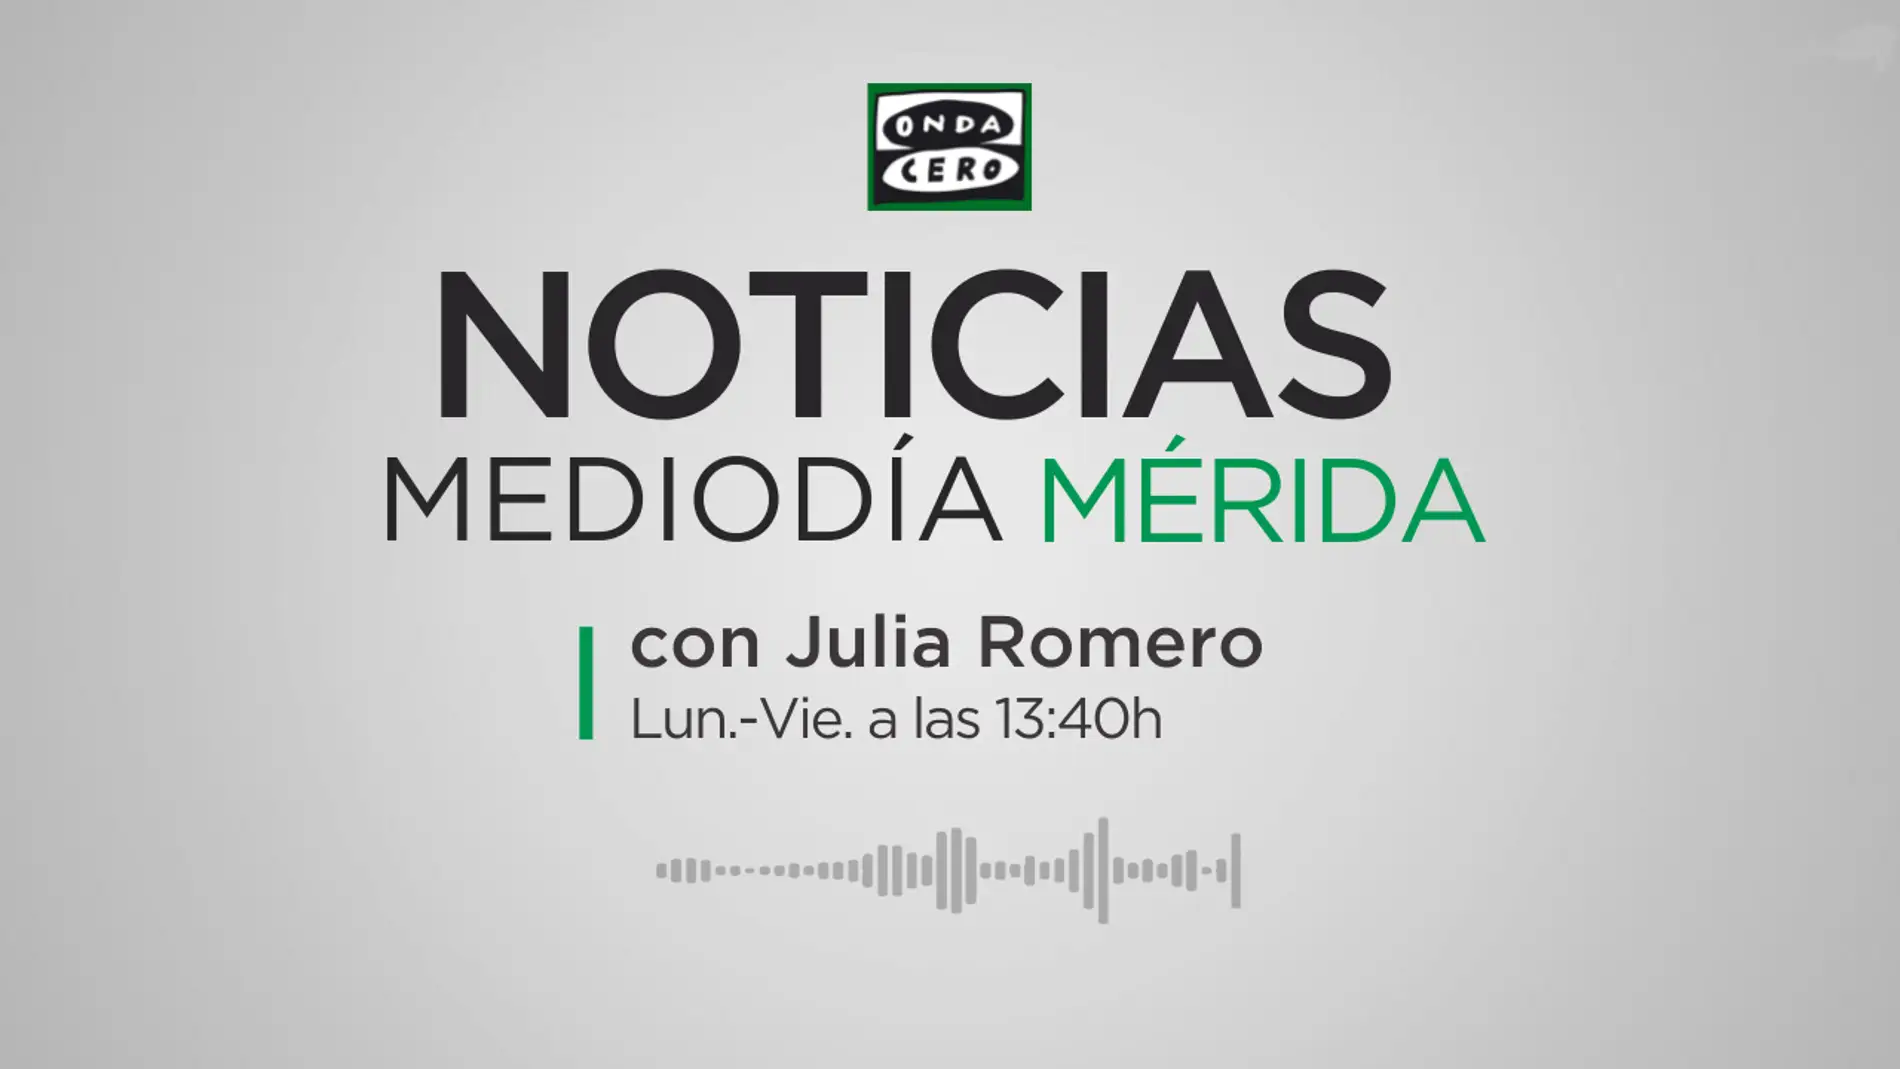 Noticias Mediodía Mérida 13.40h